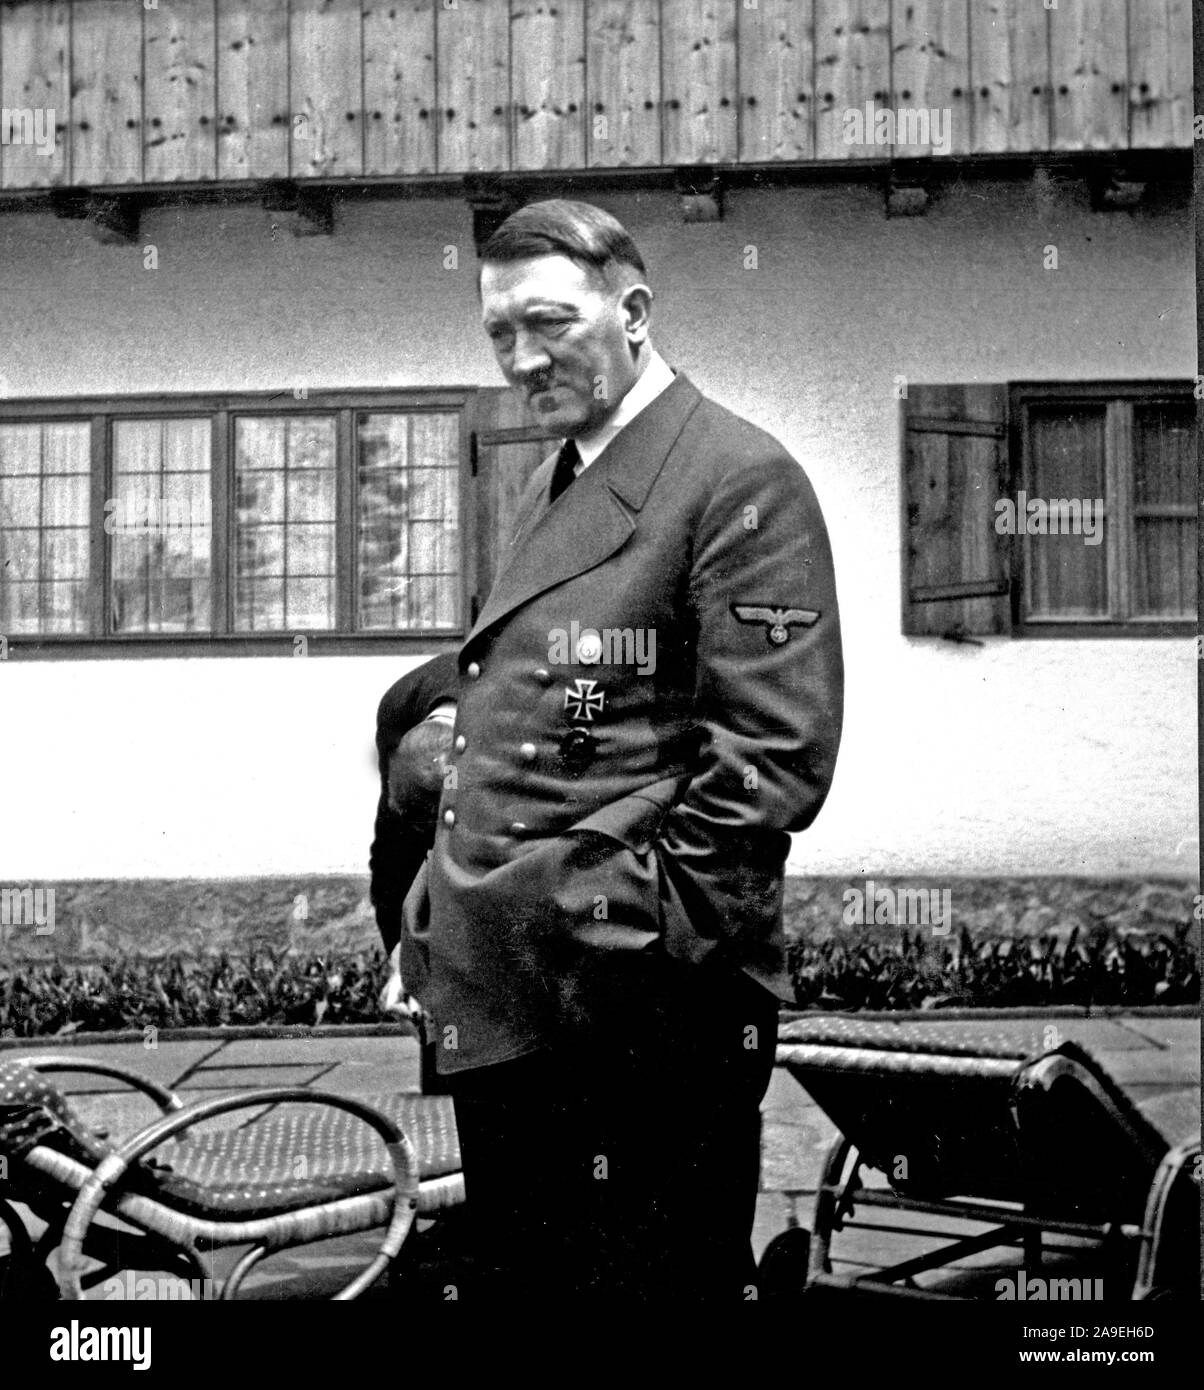 Eva Braun Collection (deset) - Adolf Hitler à l'extérieur à sa retraite ca. fin des années 1930 ou au début des années 1940 Banque D'Images